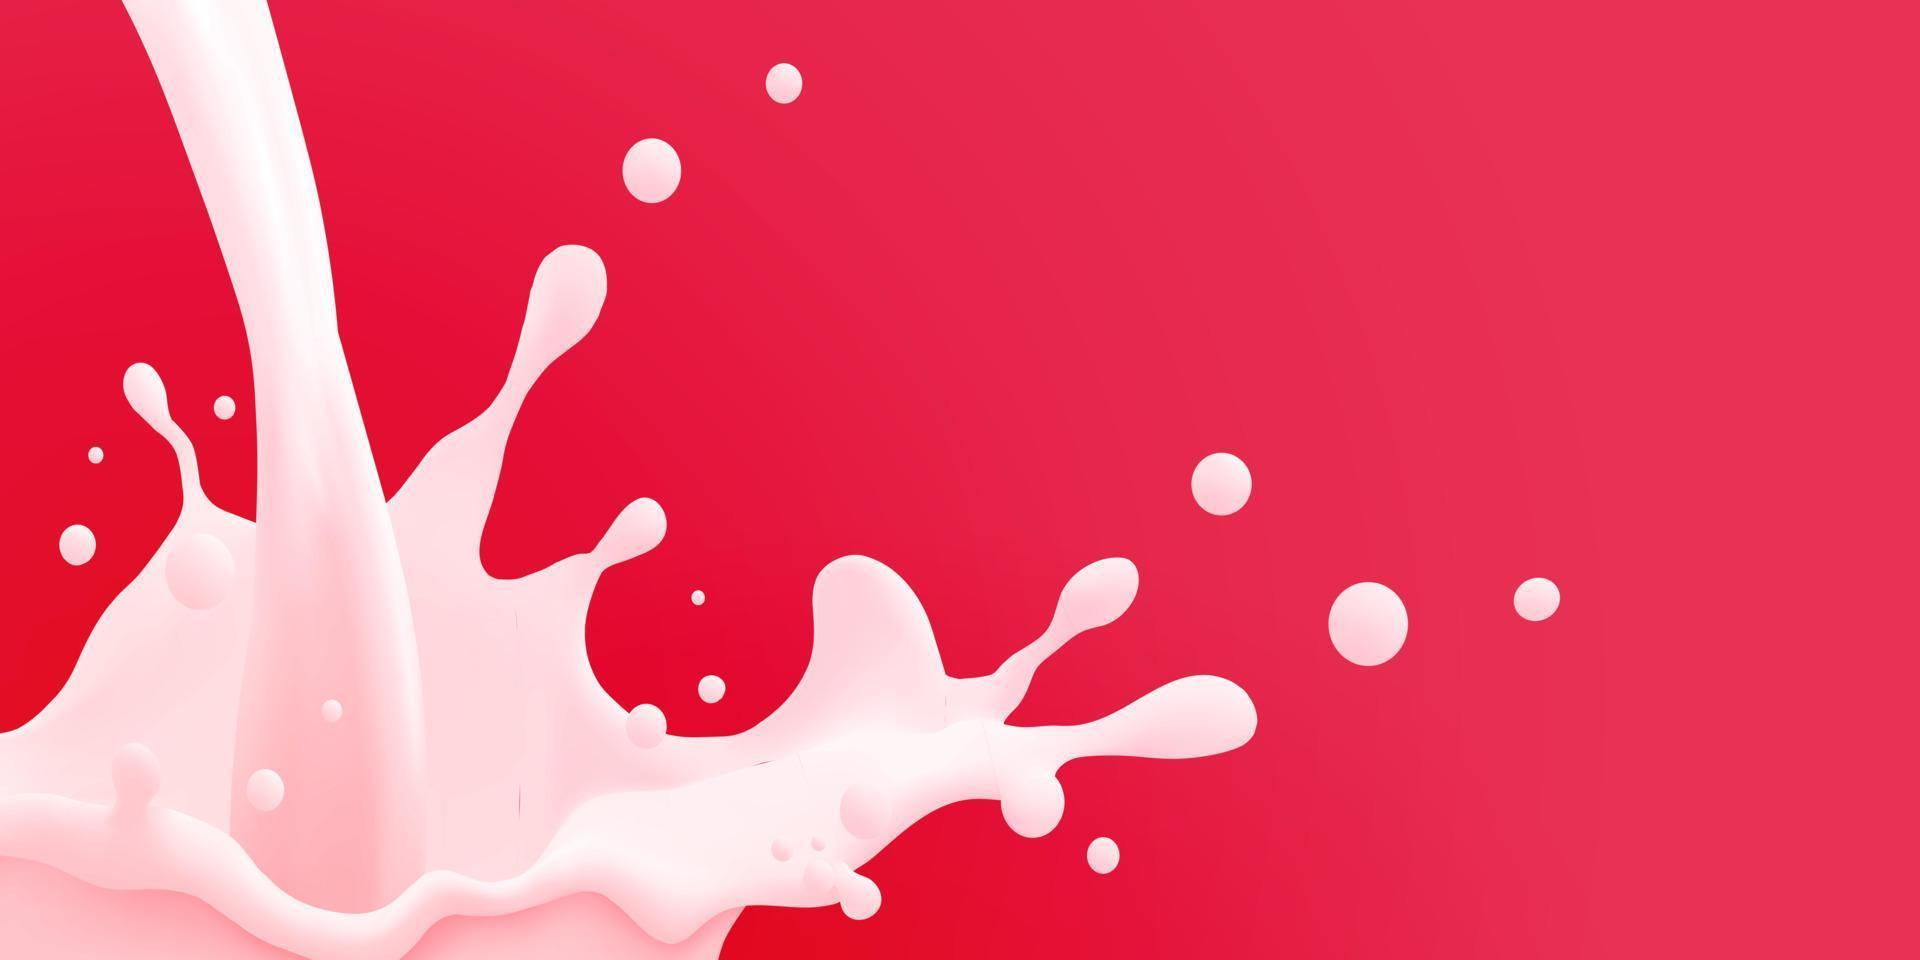 mjölk jet bakgrund, mjölkig stänk, vektor realistisk flytande vit stänk på isolerat bakgrund. 3d illustration.